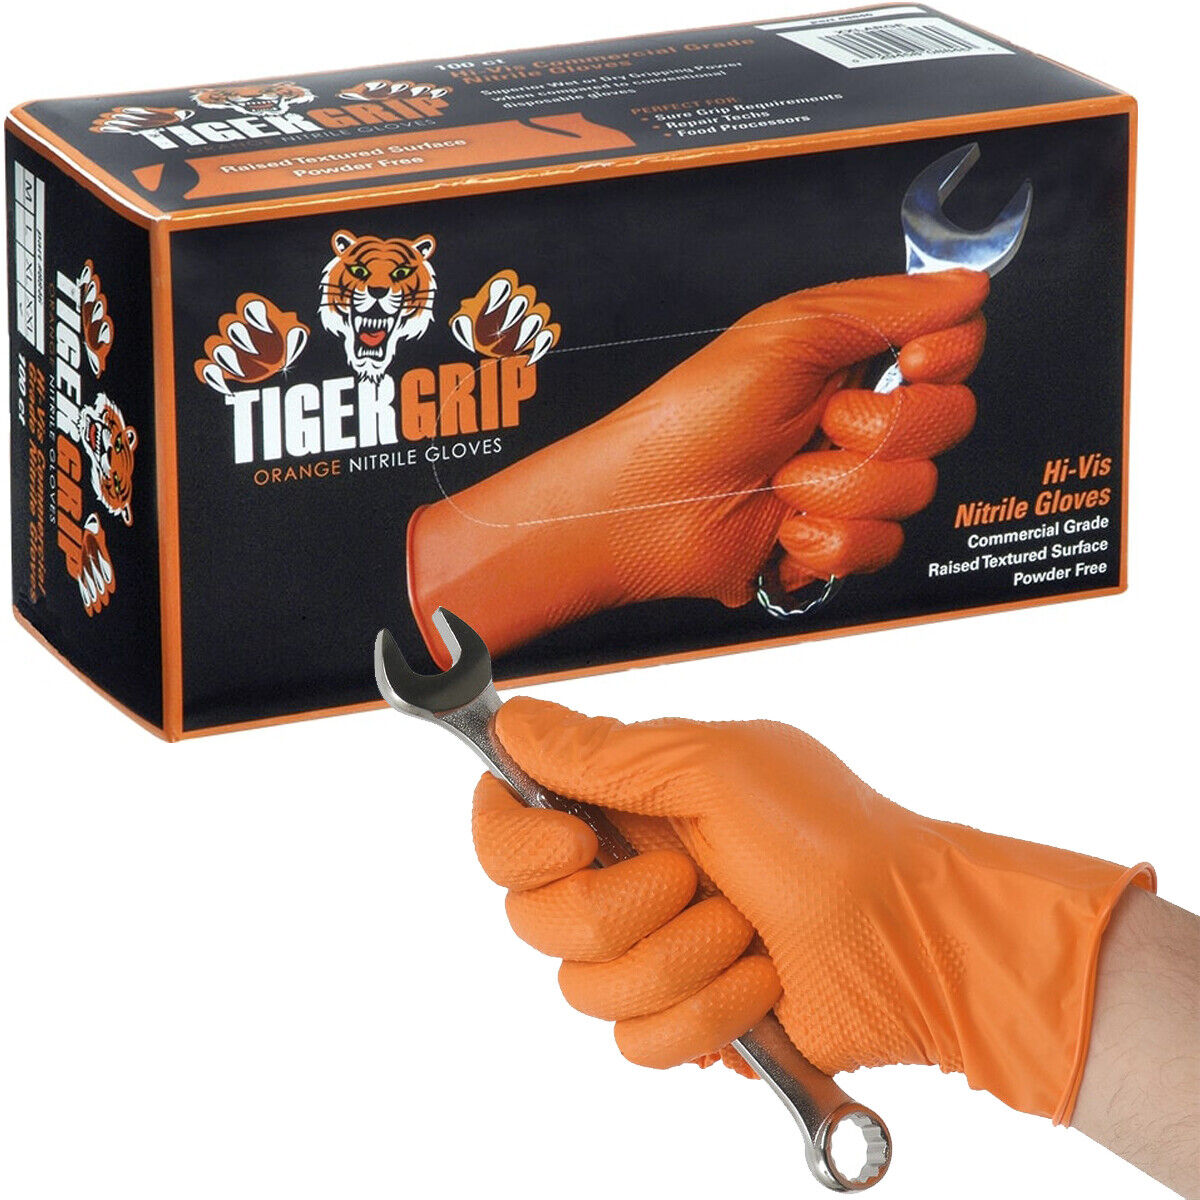 Tiger Grip Nitril-Einweghandschuhe orange Größe S 100 Stück reißfest genoppt